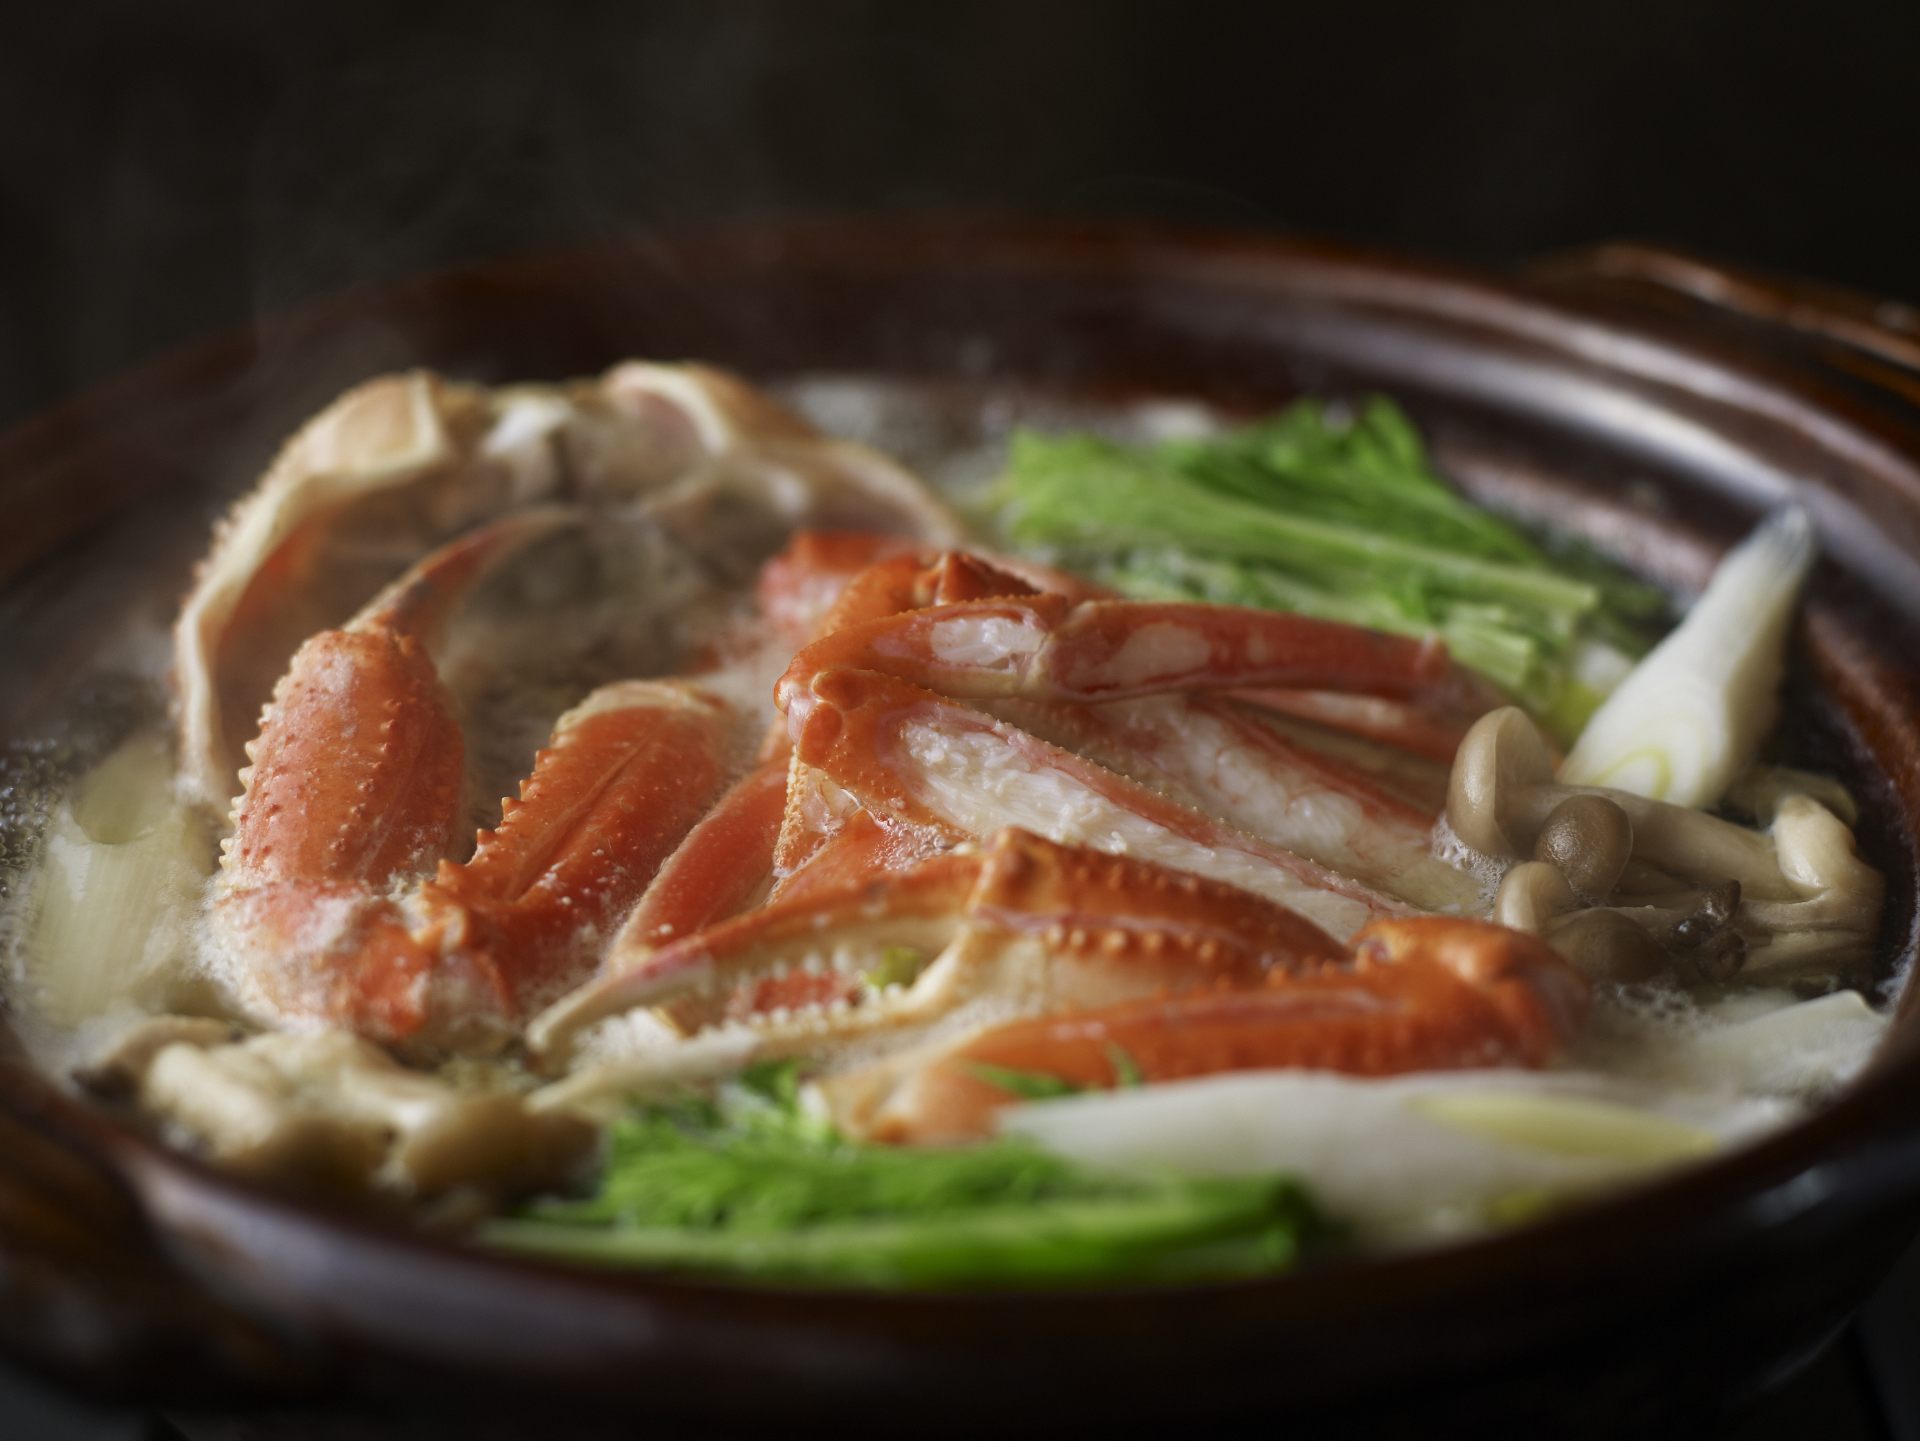 La temporada de cangrejo es de noviembre a marzo. En Kinosaki Onsen en invierno, los platos de cangrejo son imprescindibles.